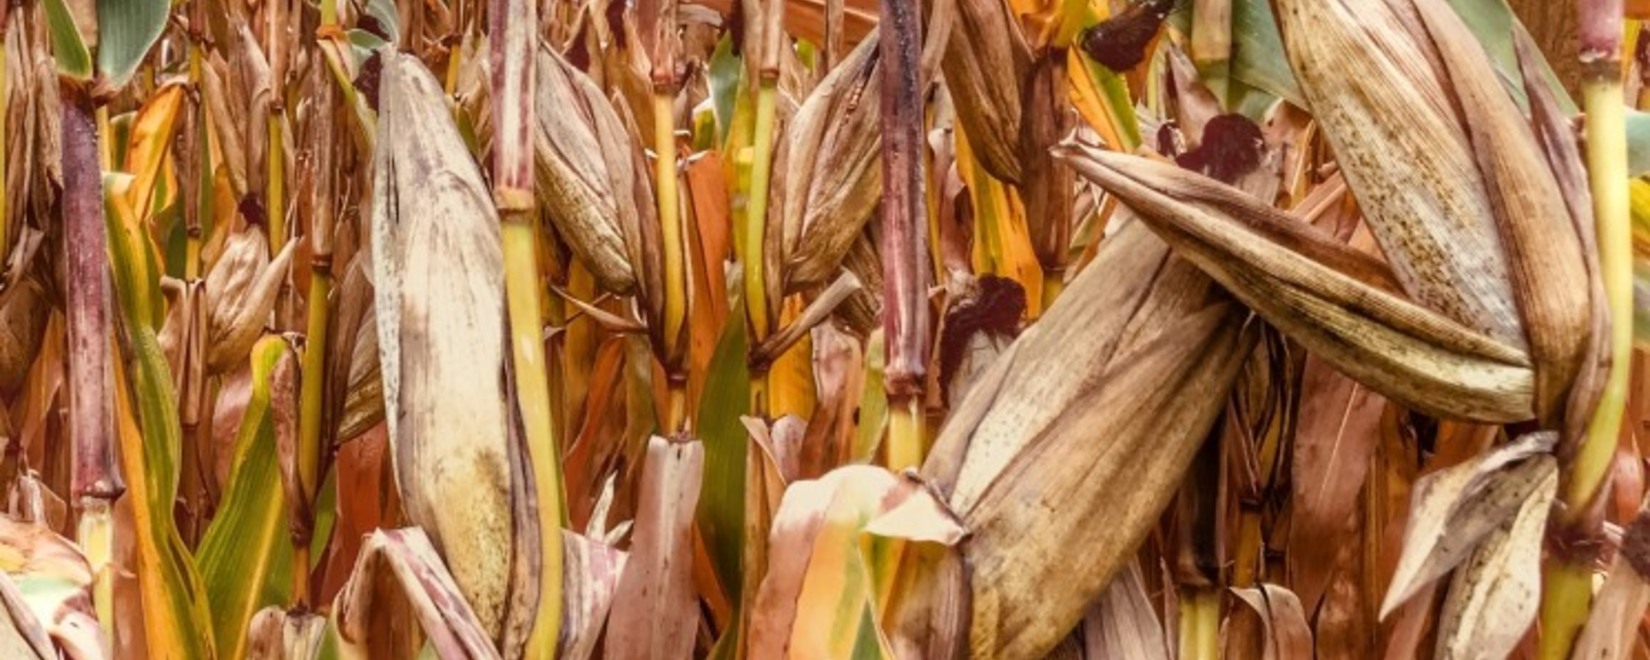 Фьючерсы сои в Чикаго выросли, пшеницы и кукурузы снизились в четверг